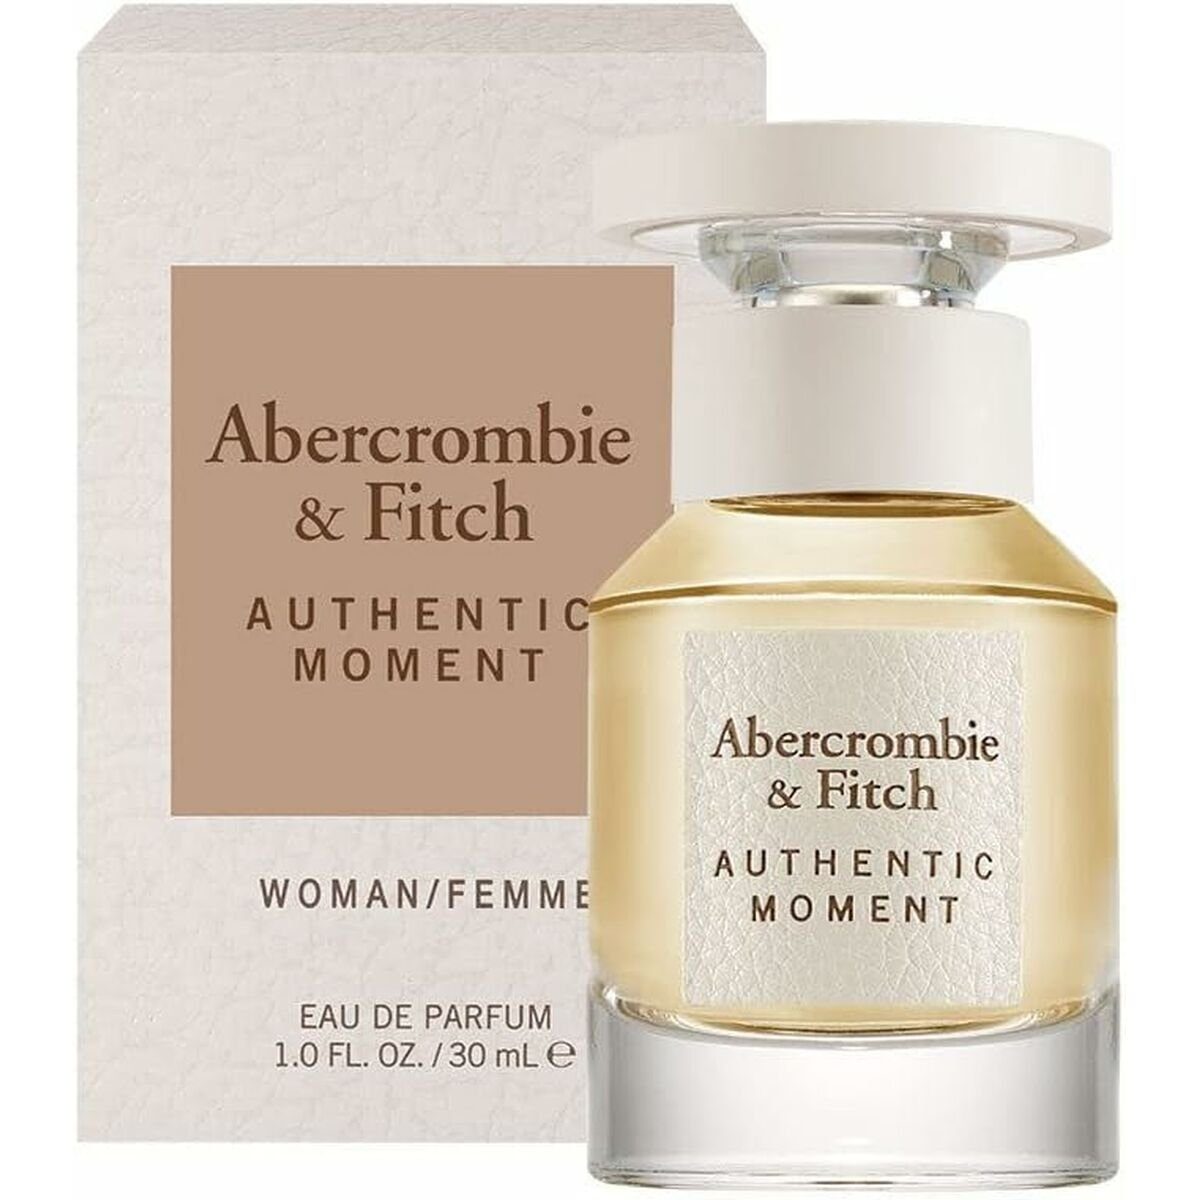 Abercrombie & Fitch Eau de Abercrombie Moment Eau 30 ml Damenparfüm Authentic Parfum Toilette de Fitch